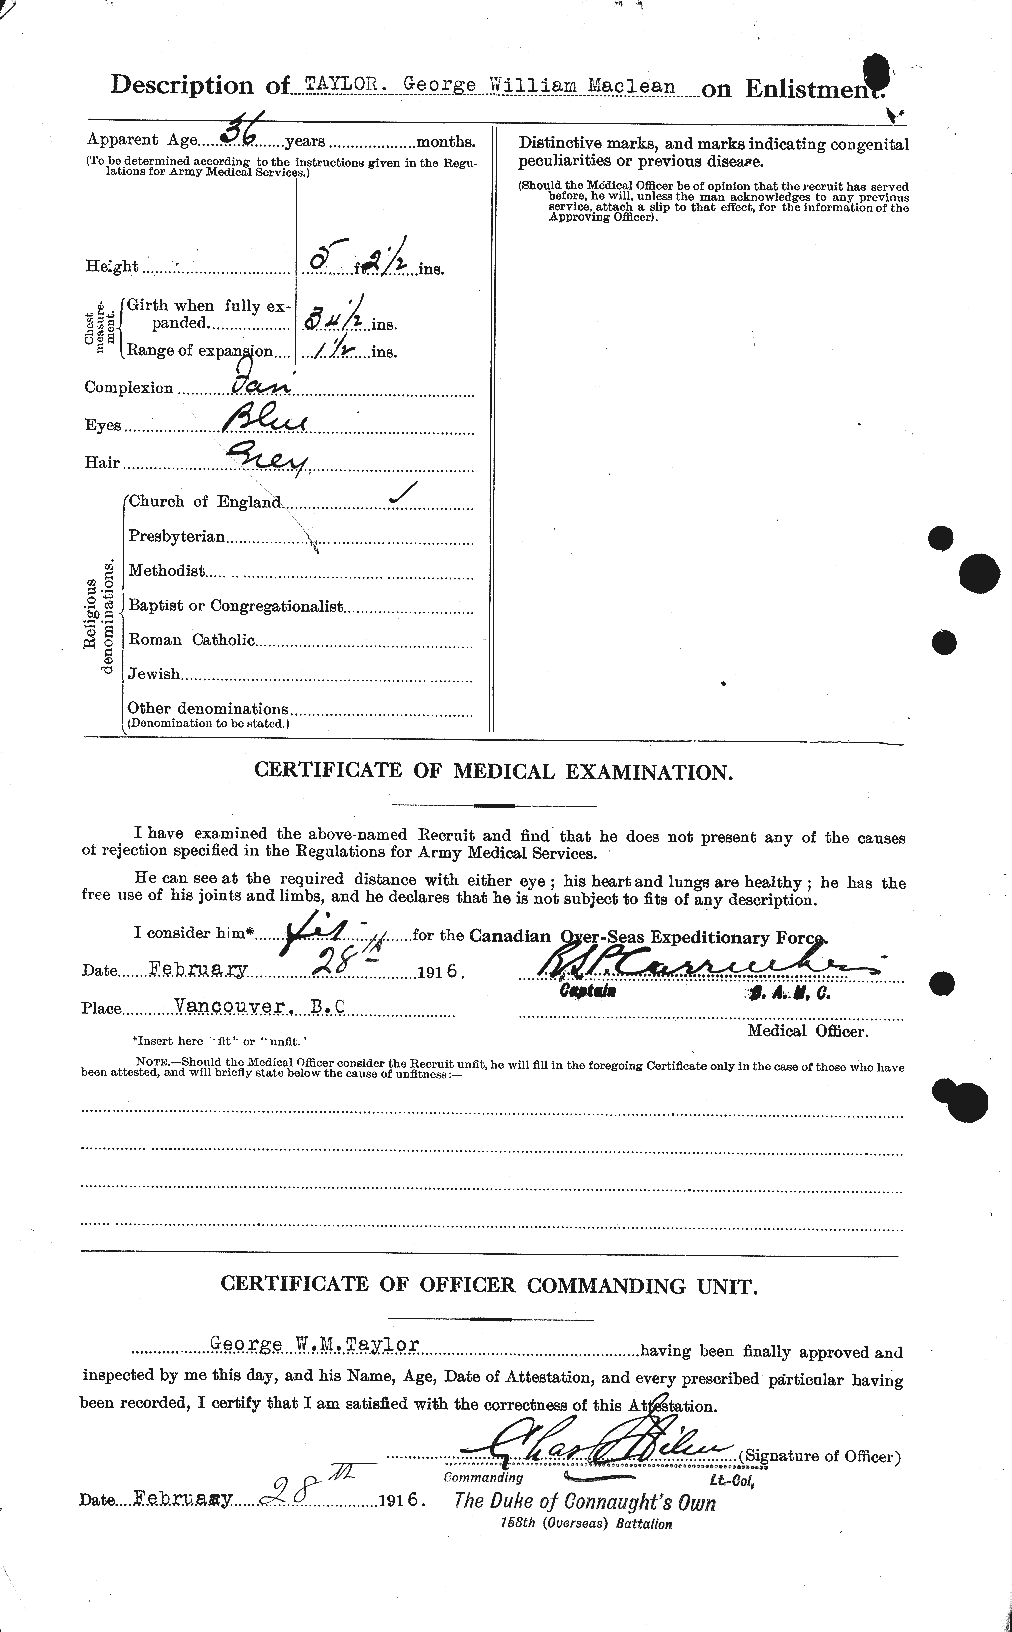 Dossiers du Personnel de la Première Guerre mondiale - CEC 626372b